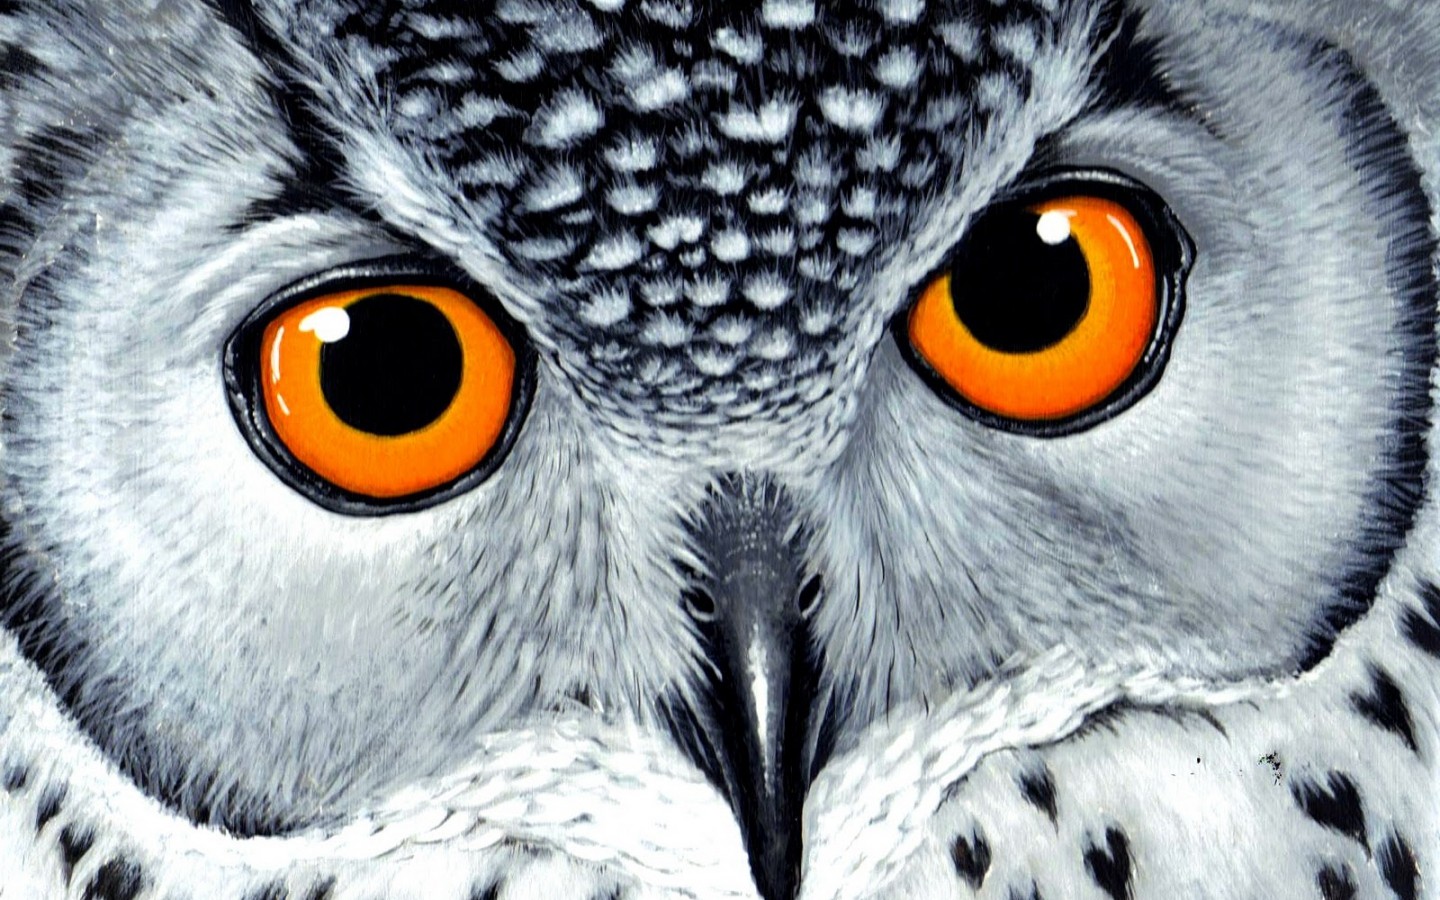 General 1440x900 owl animals birds drawing white yellow eyes orange closeup animal eyes